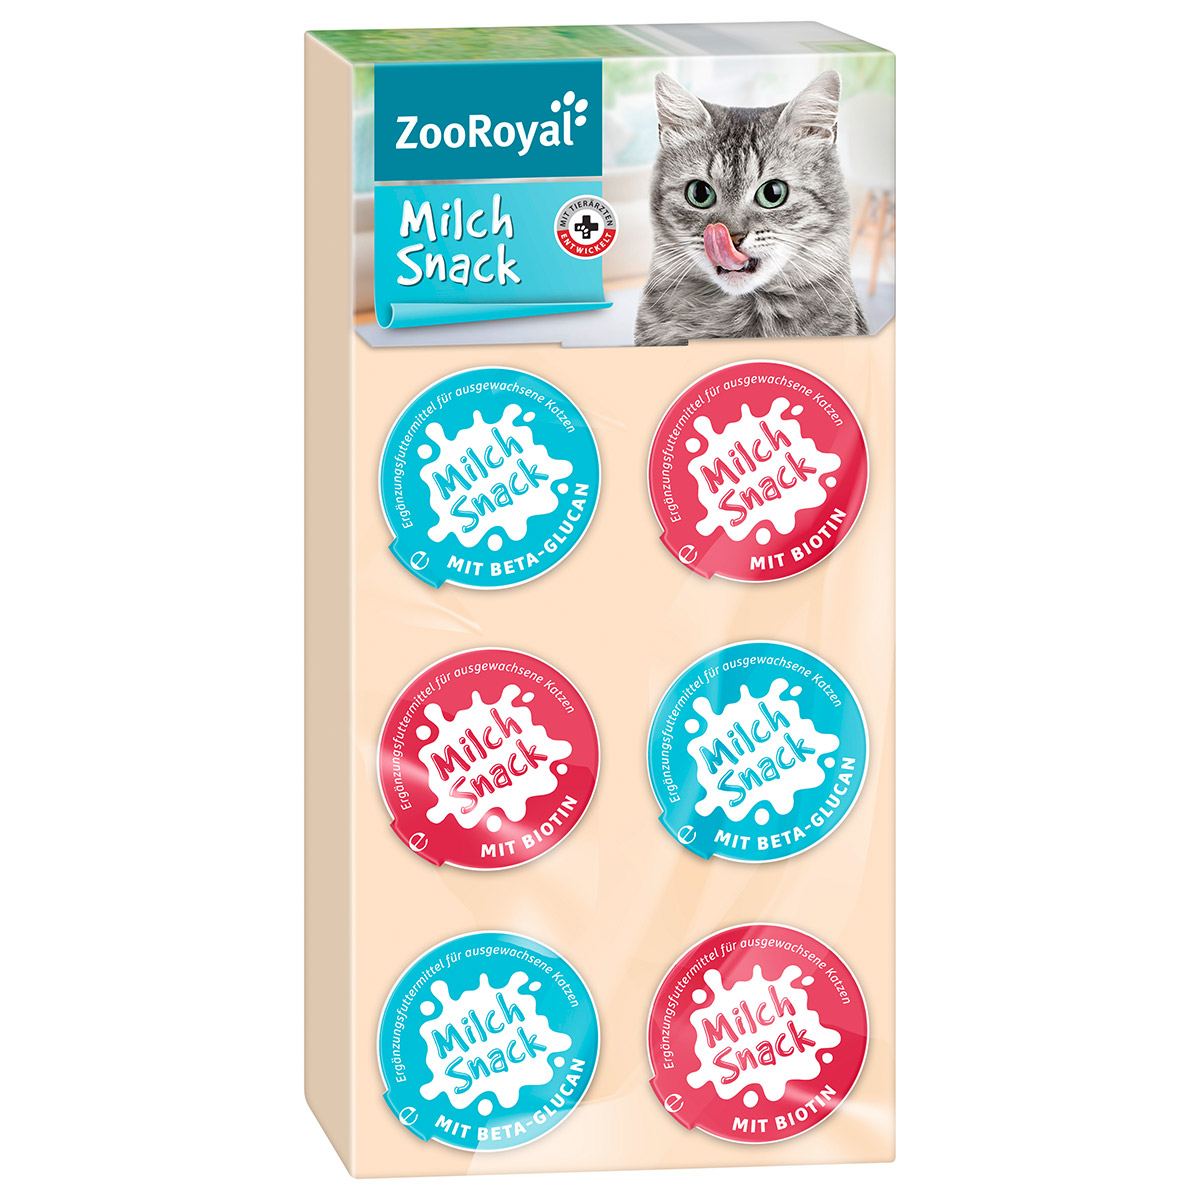 ZooRoyal Milch Snack 3x (8x15g)